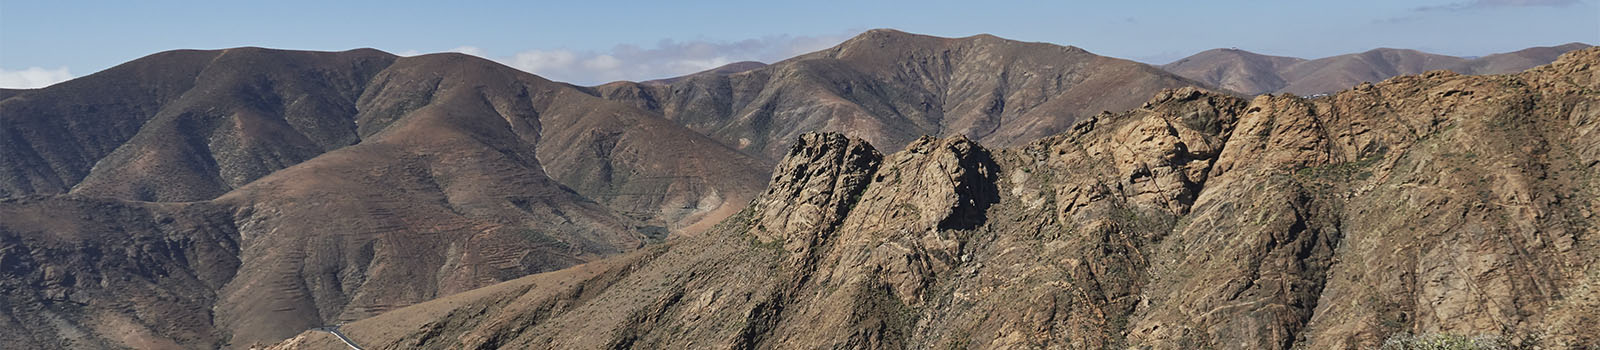 Wandern + Trekking auf Fuerteventura: Toto – Los Granadillos – Morro de los Olivos – Filo de Fénduca